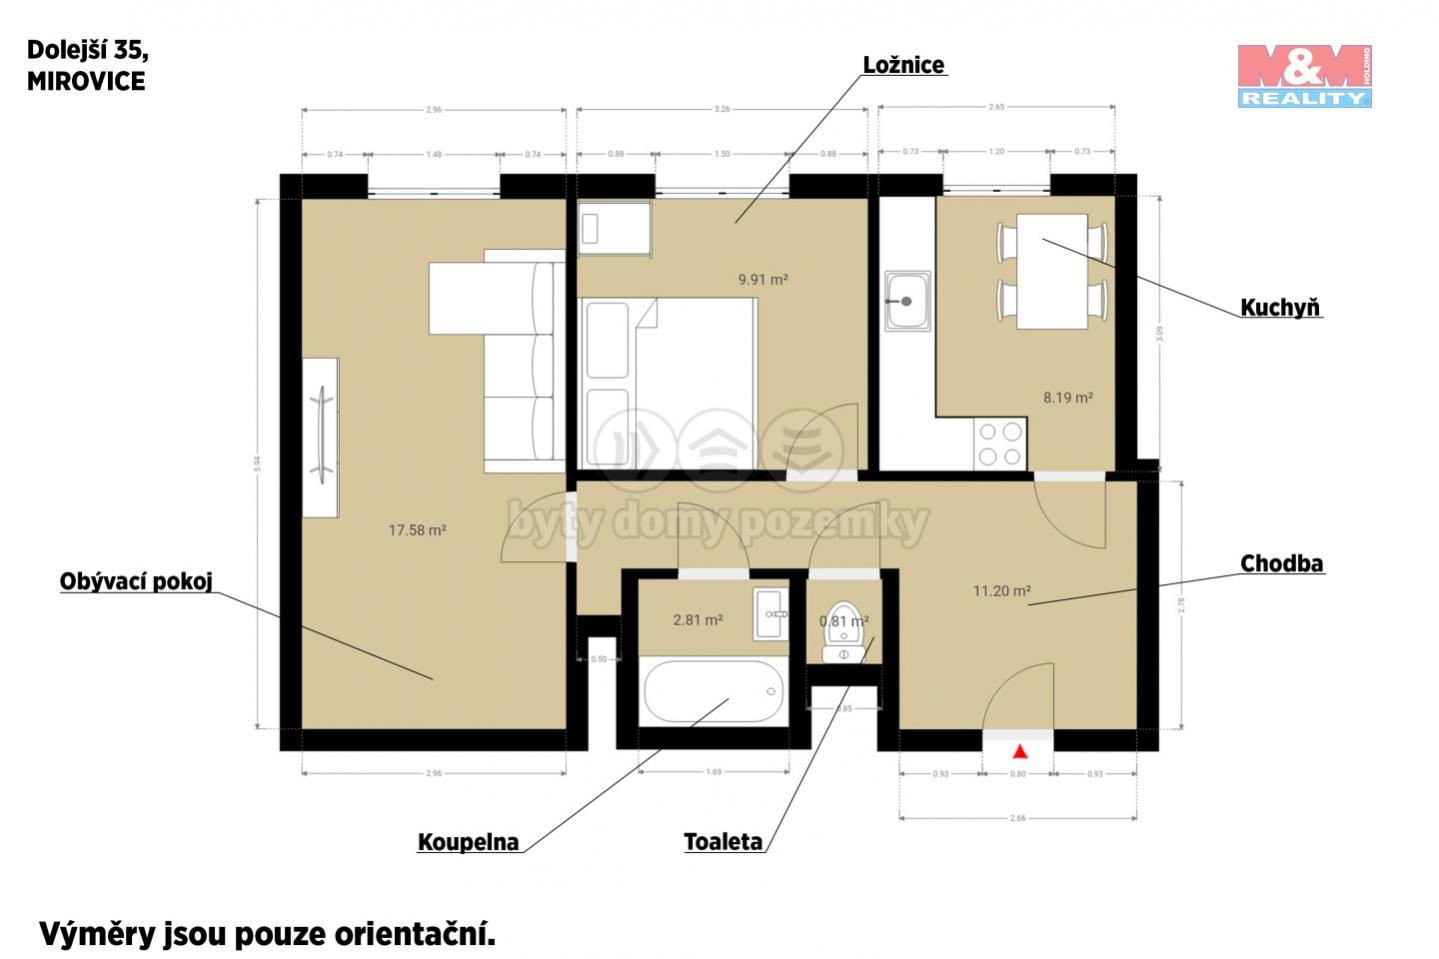 Prodej bytu 2+1, 50 m, Mirovice, ul. Dolejší, obrázek č. 3